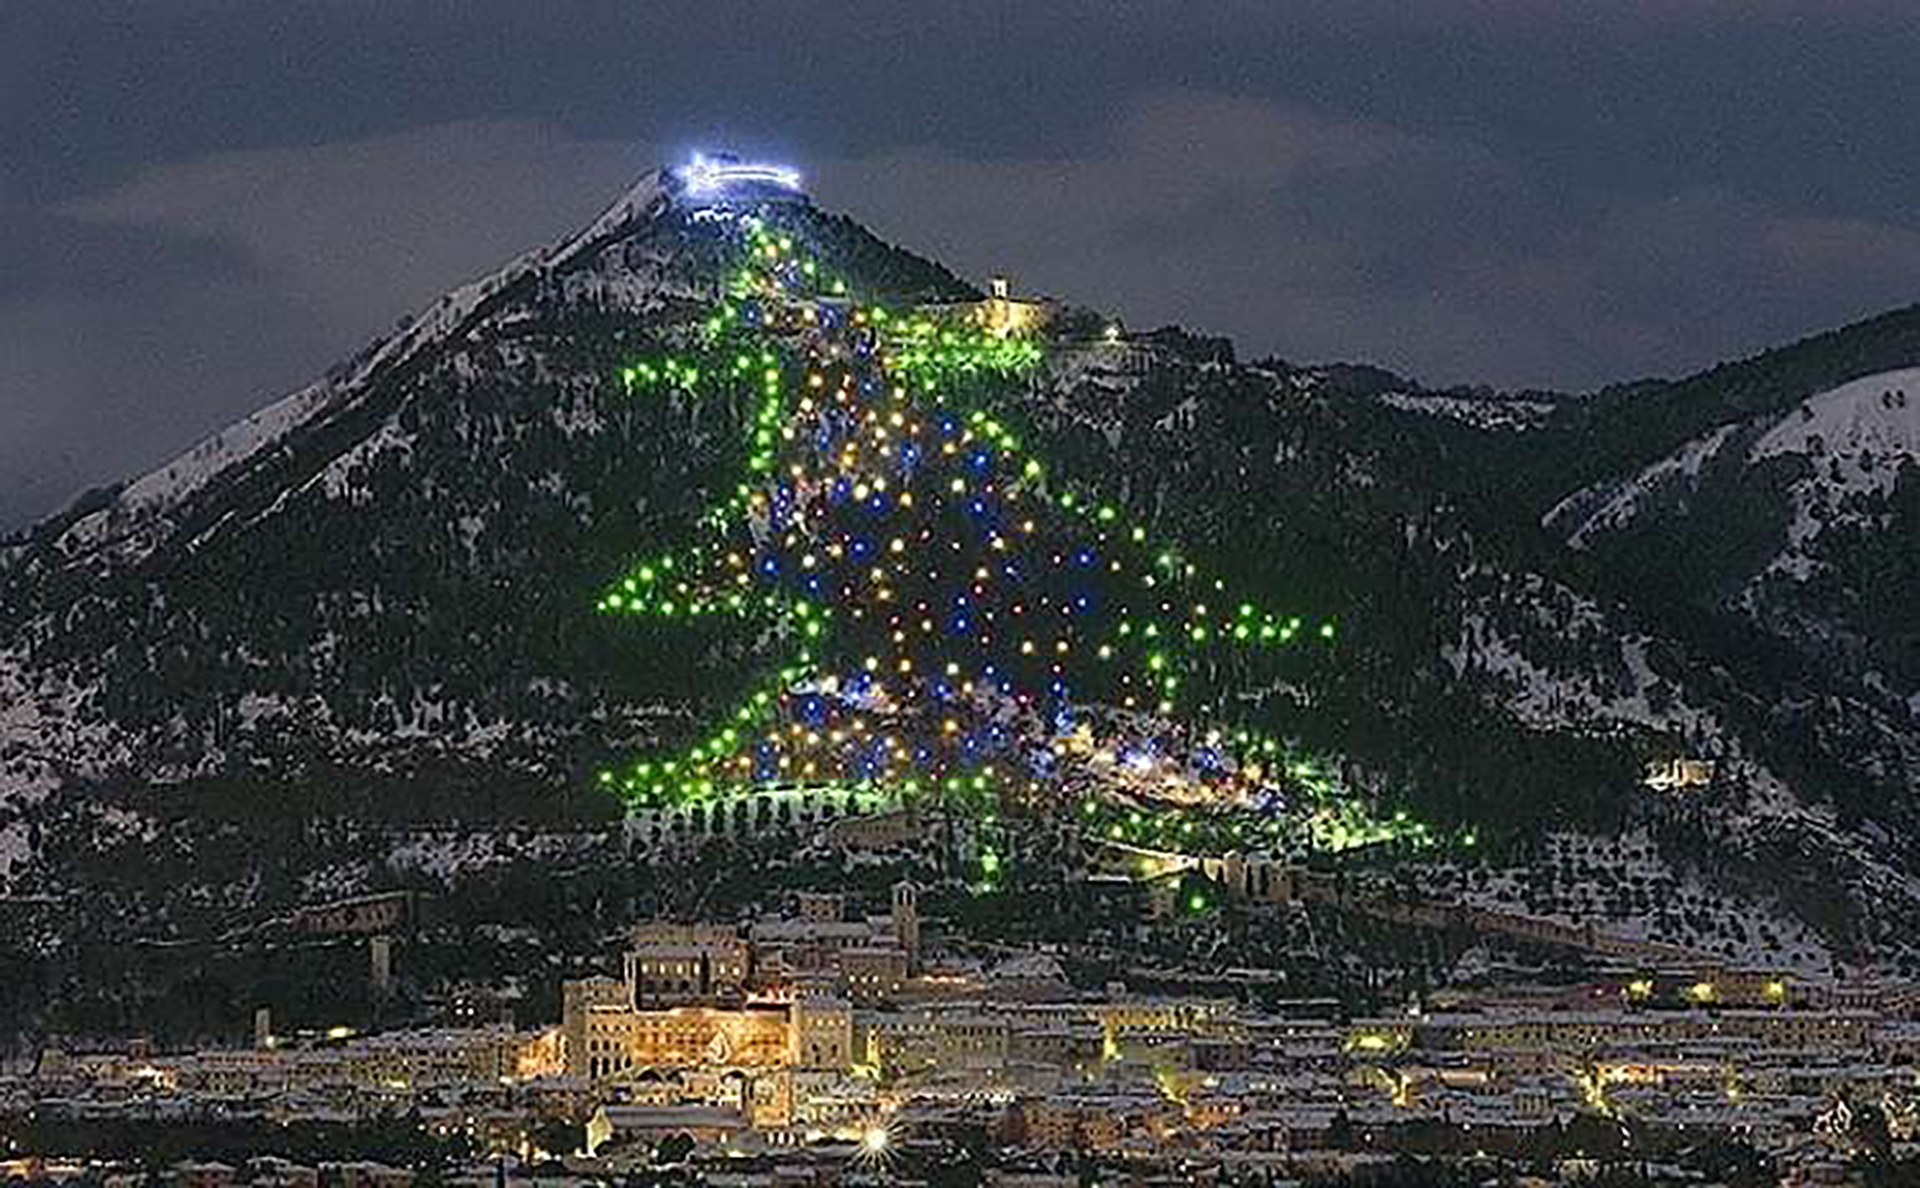 A nueve años de su "nacimiento", el árbol de Navidad italiano se posicionó como "el más grande del mundo" / (Fuente: Oficina de turismo de Gubbio, Italia)